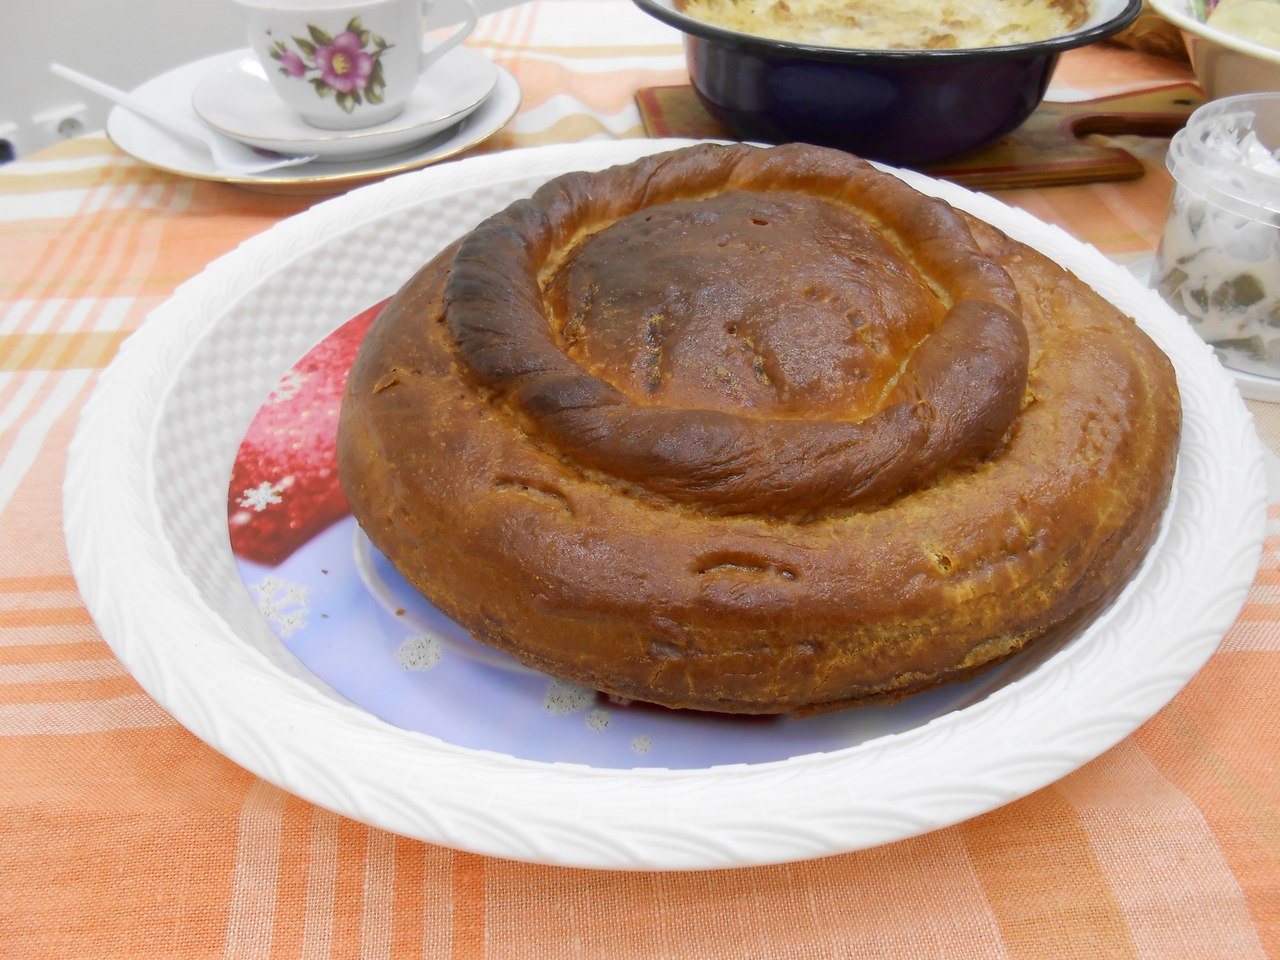 Хуплу чувашское блюдо рецепт с фото пошагово